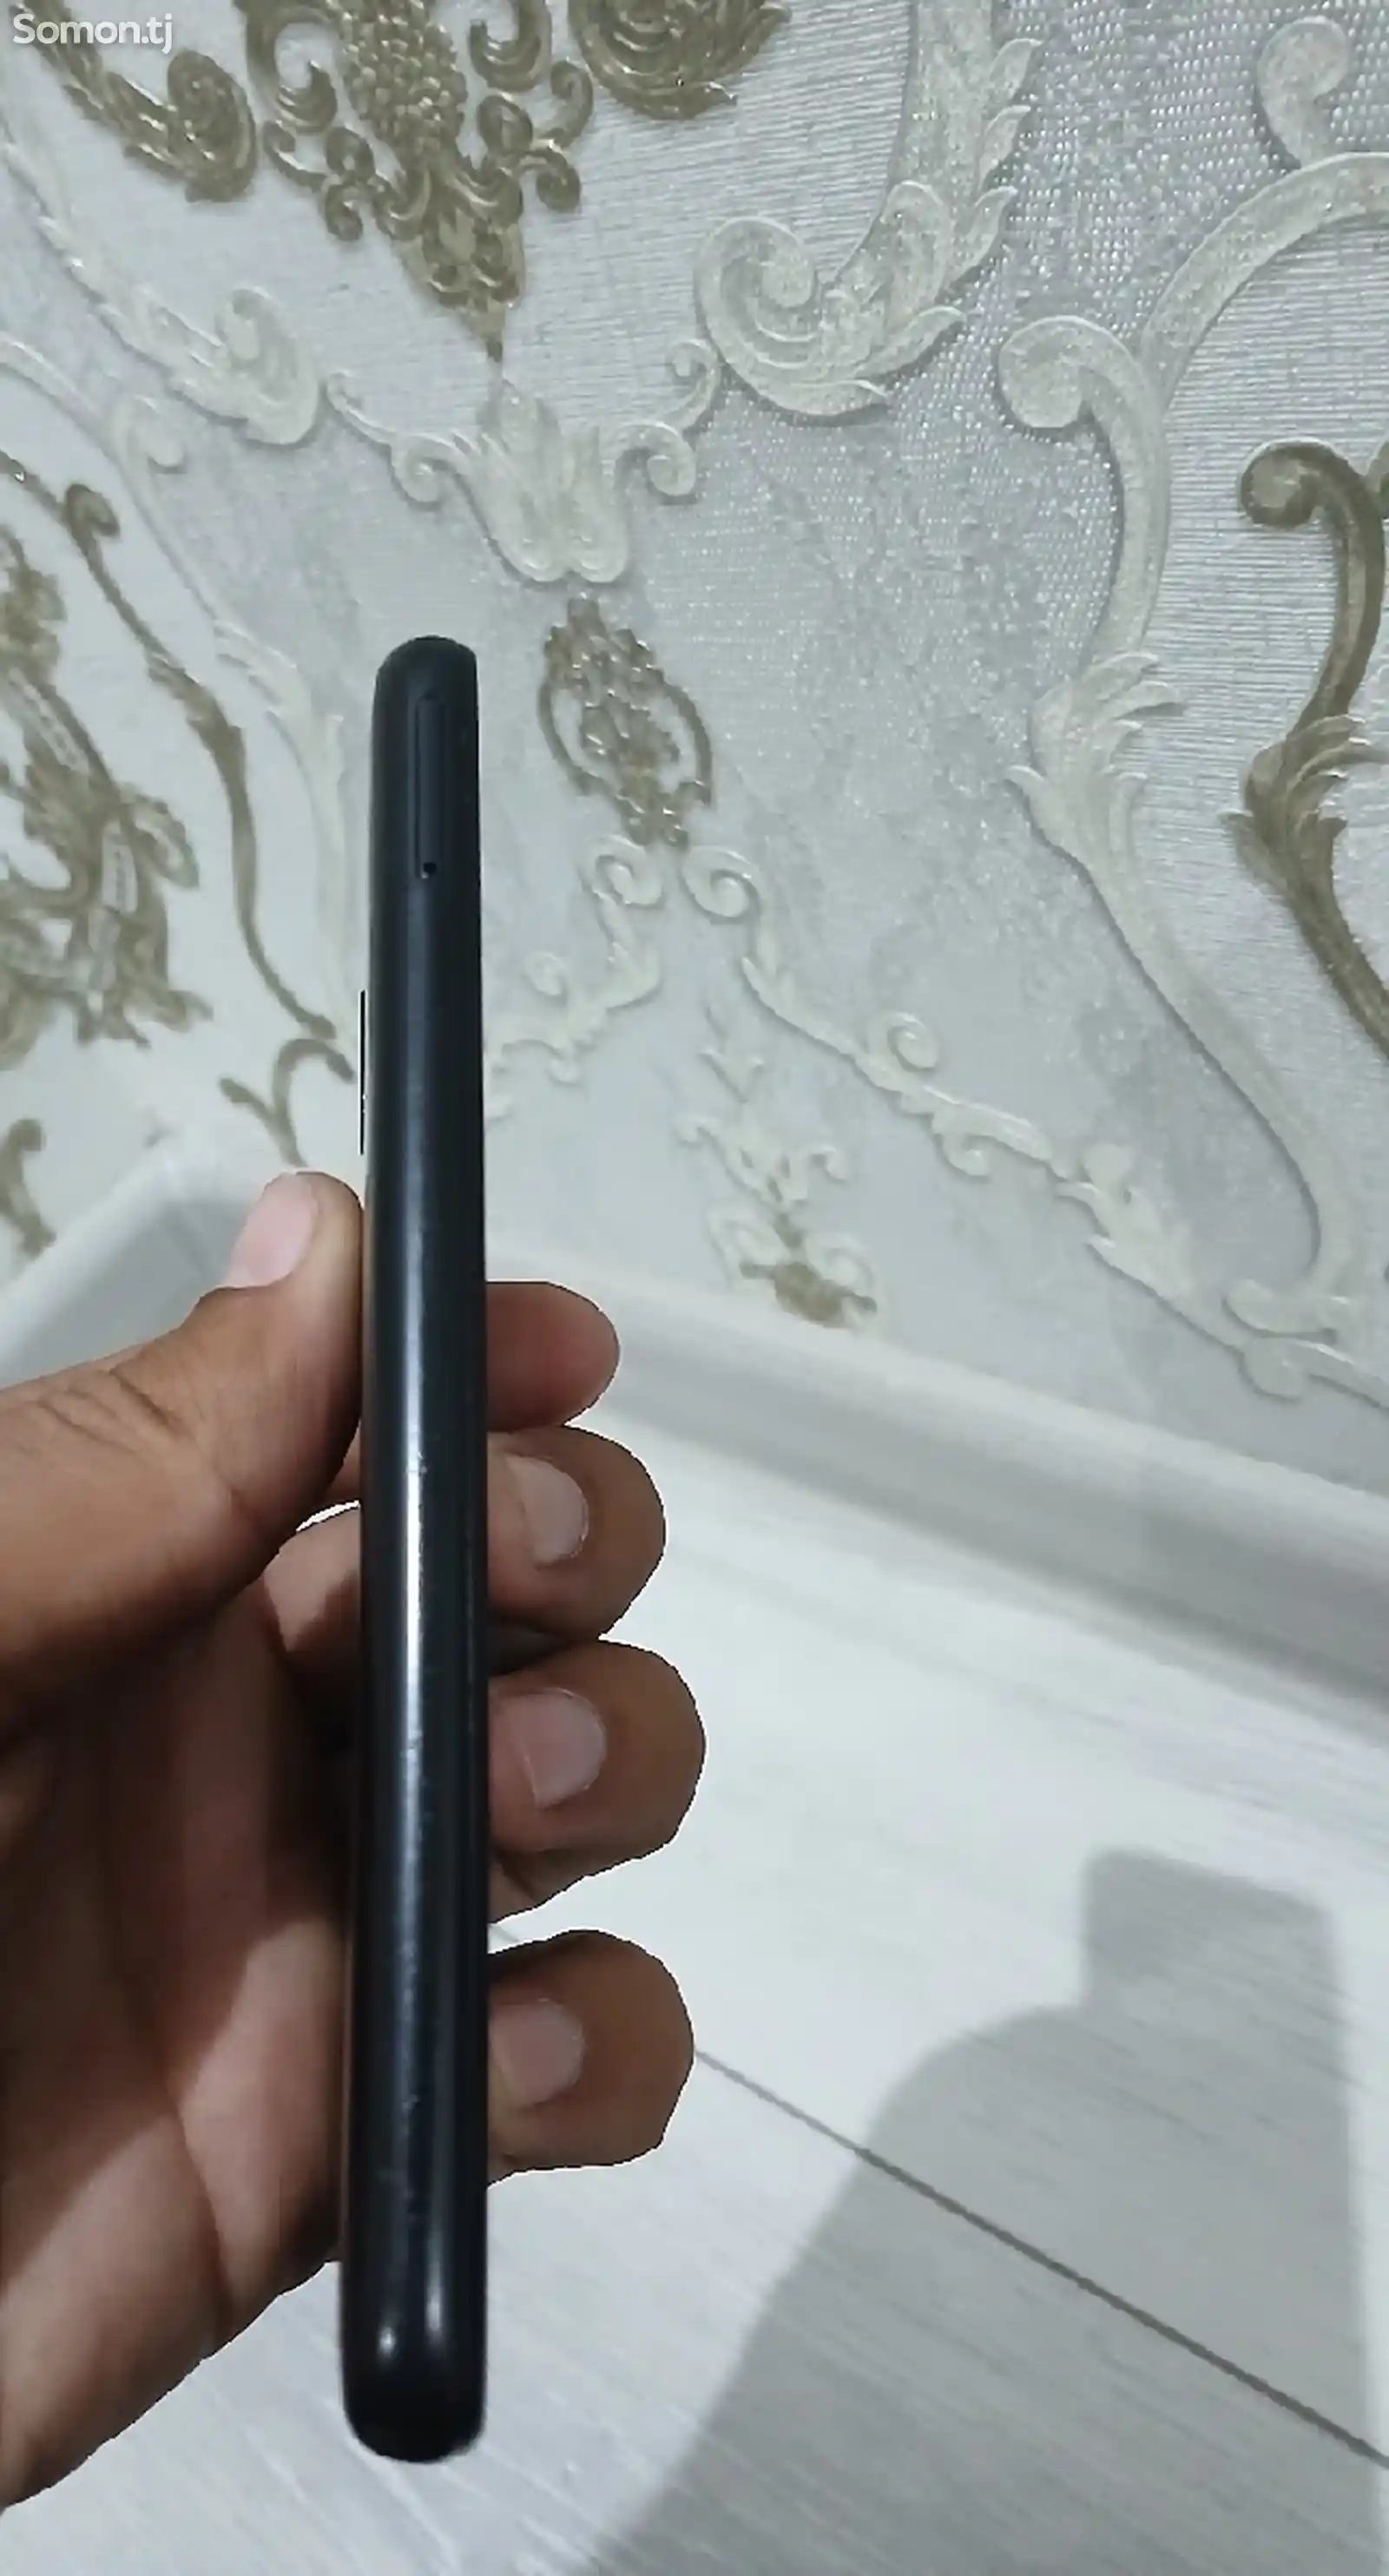 Xiaomi Redmi 7-2